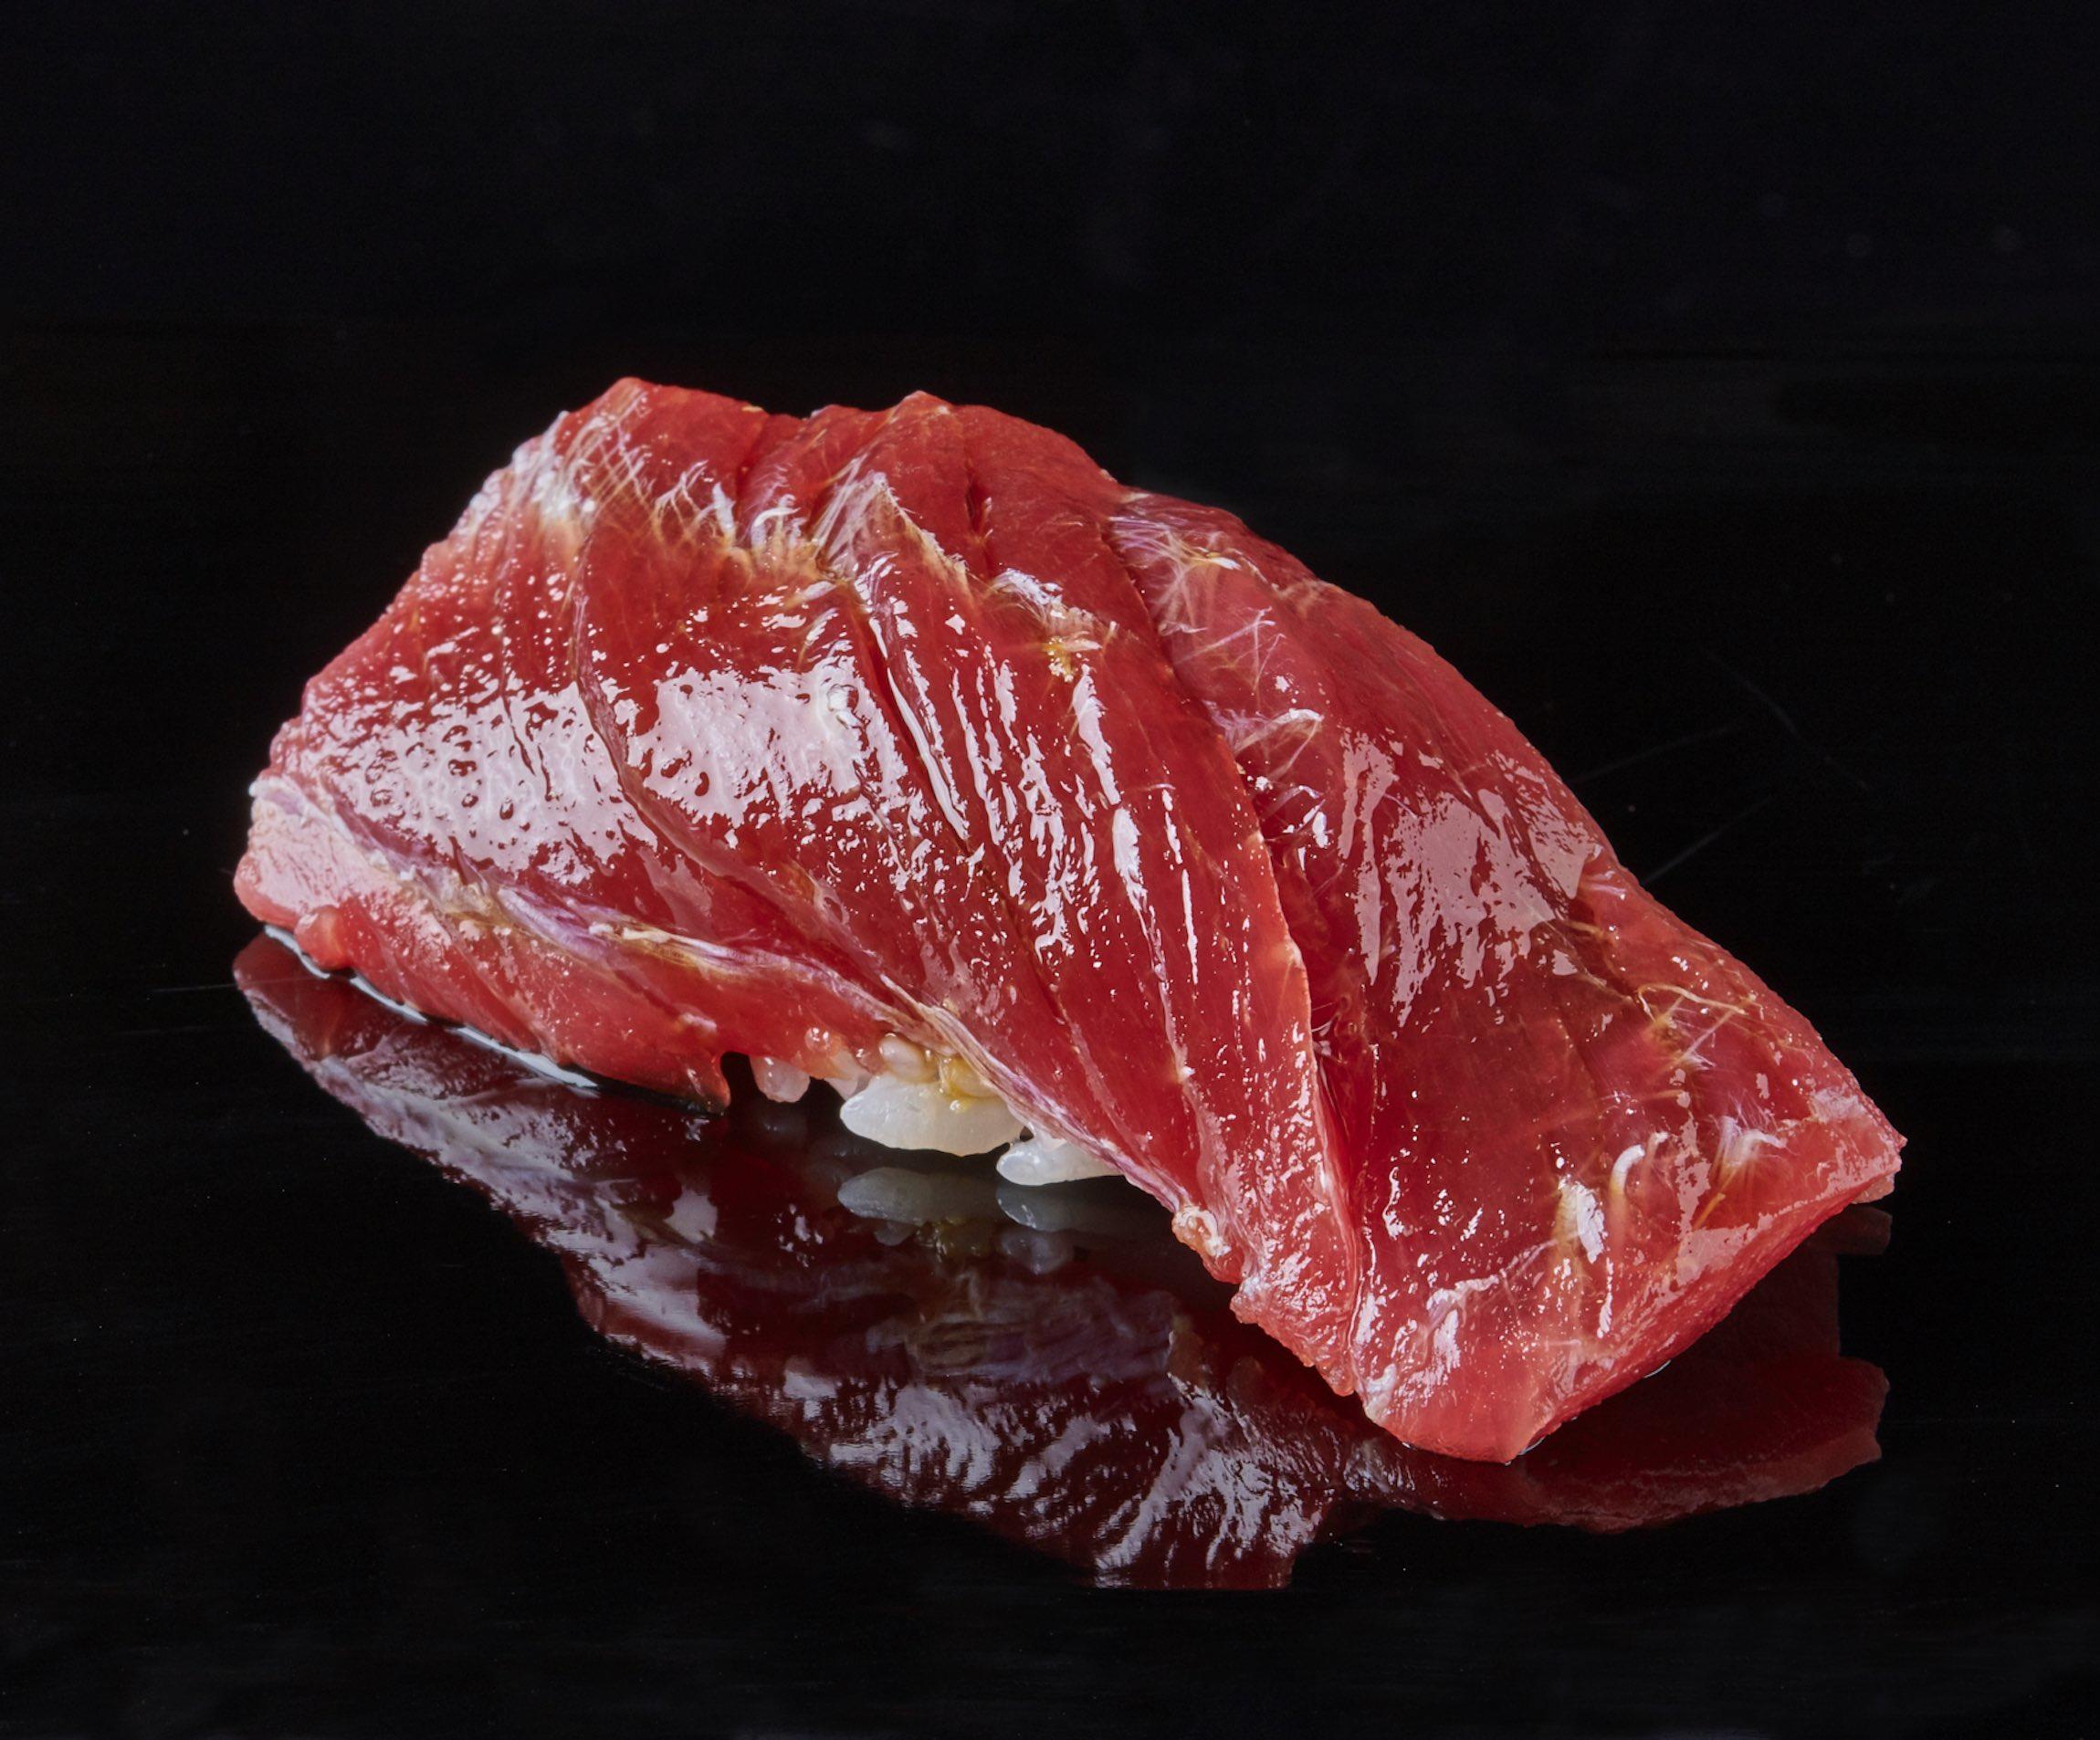 㐂寿司 のマグロは美しい 㐂寿司 の365日 公式 Dancyu ダンチュウ